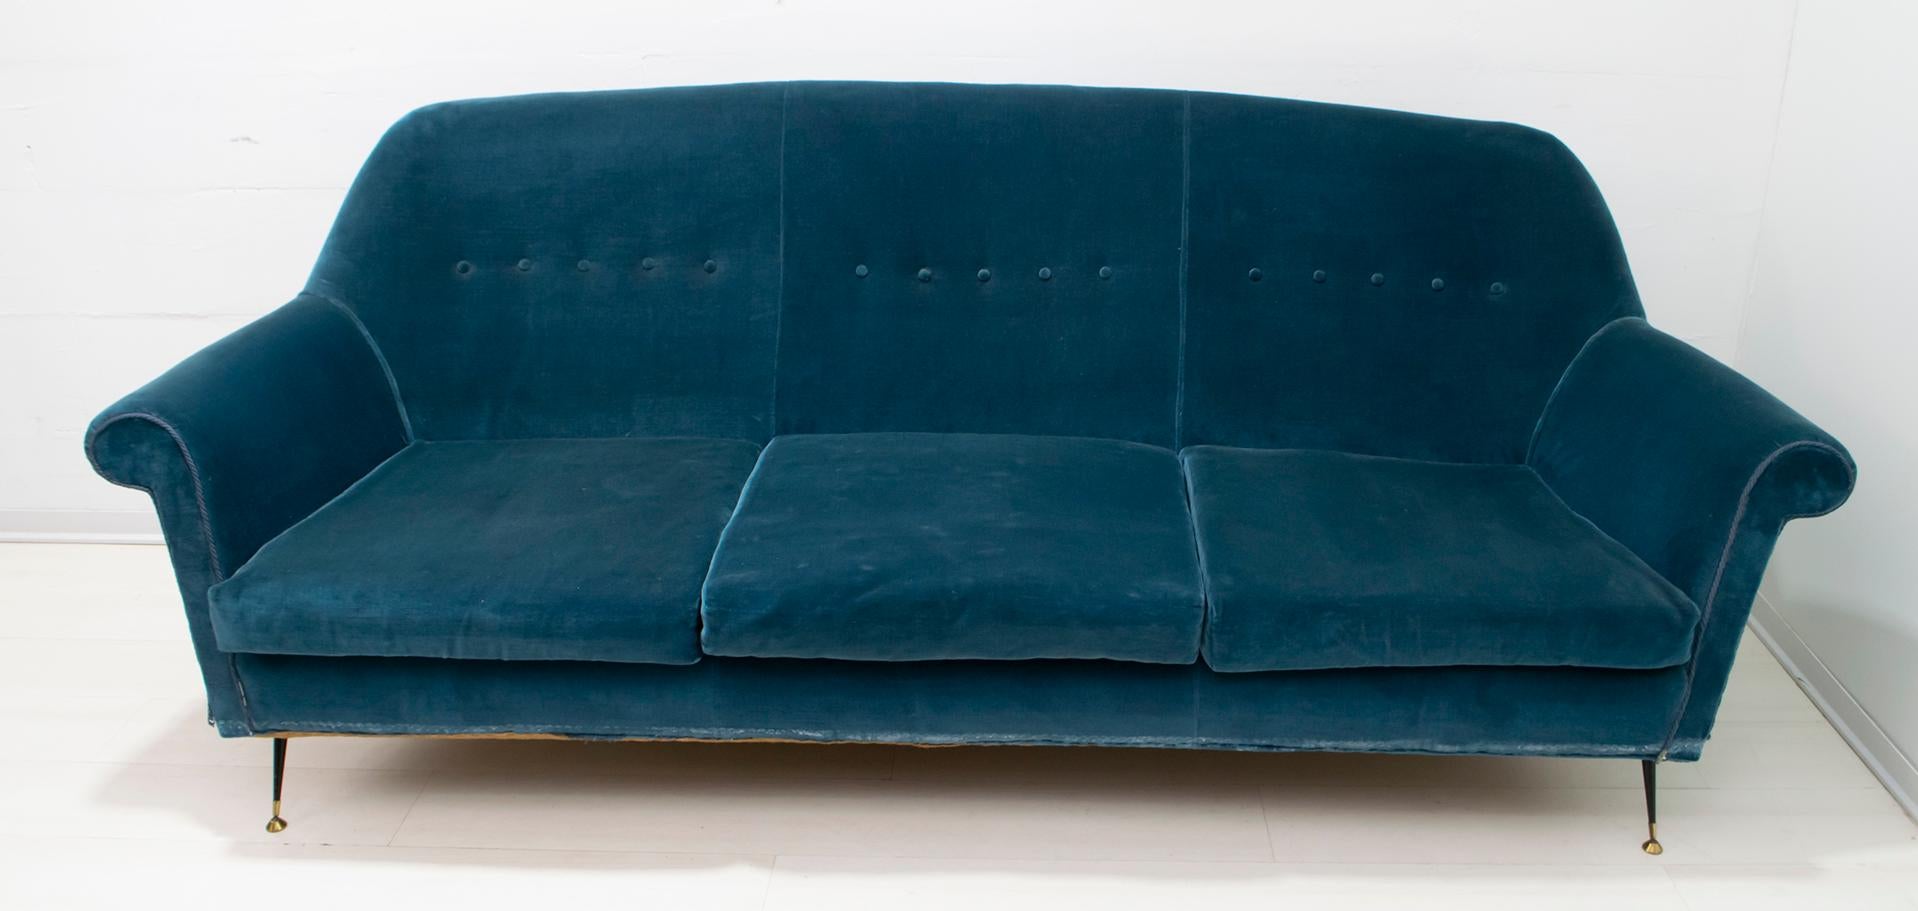 Canapé conçu par Gigi Radice pour Minotti. Structure en bois massif, revêtement en velours bleu et pieds en laiton et métal laqué noir. Il est recommandé de remplacer la doublure, comme le montre la photo, si elle est usée.
